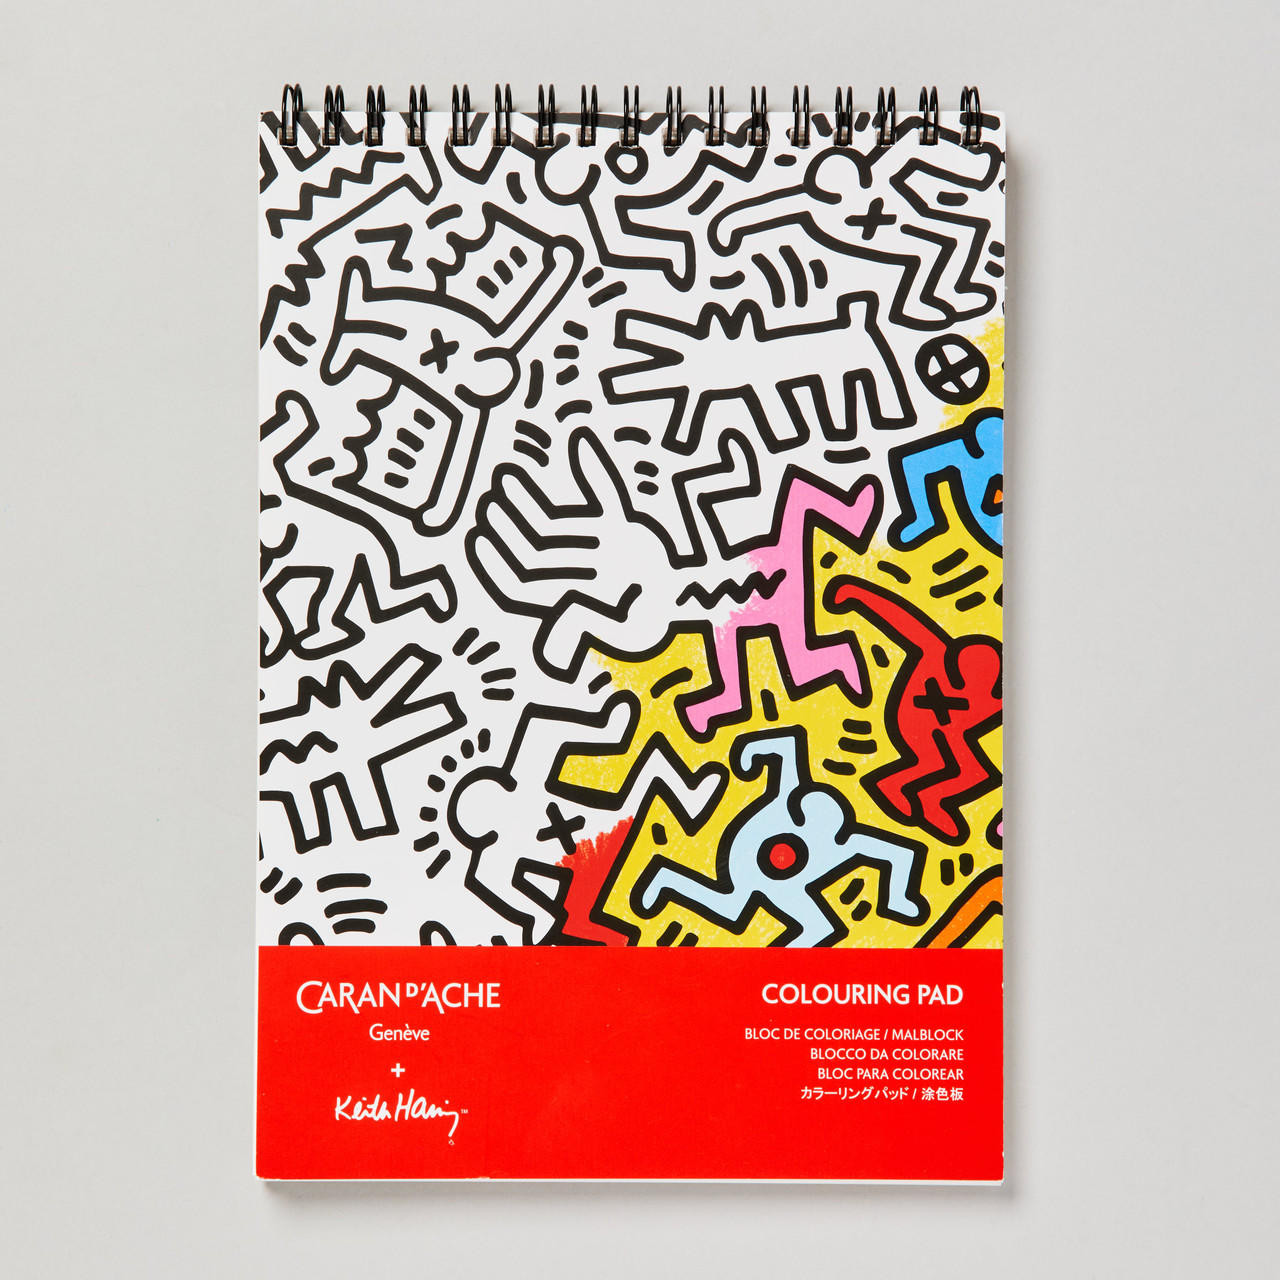 Caran d’Ache Keith Haring Colouring Pad 20 Sheets A5